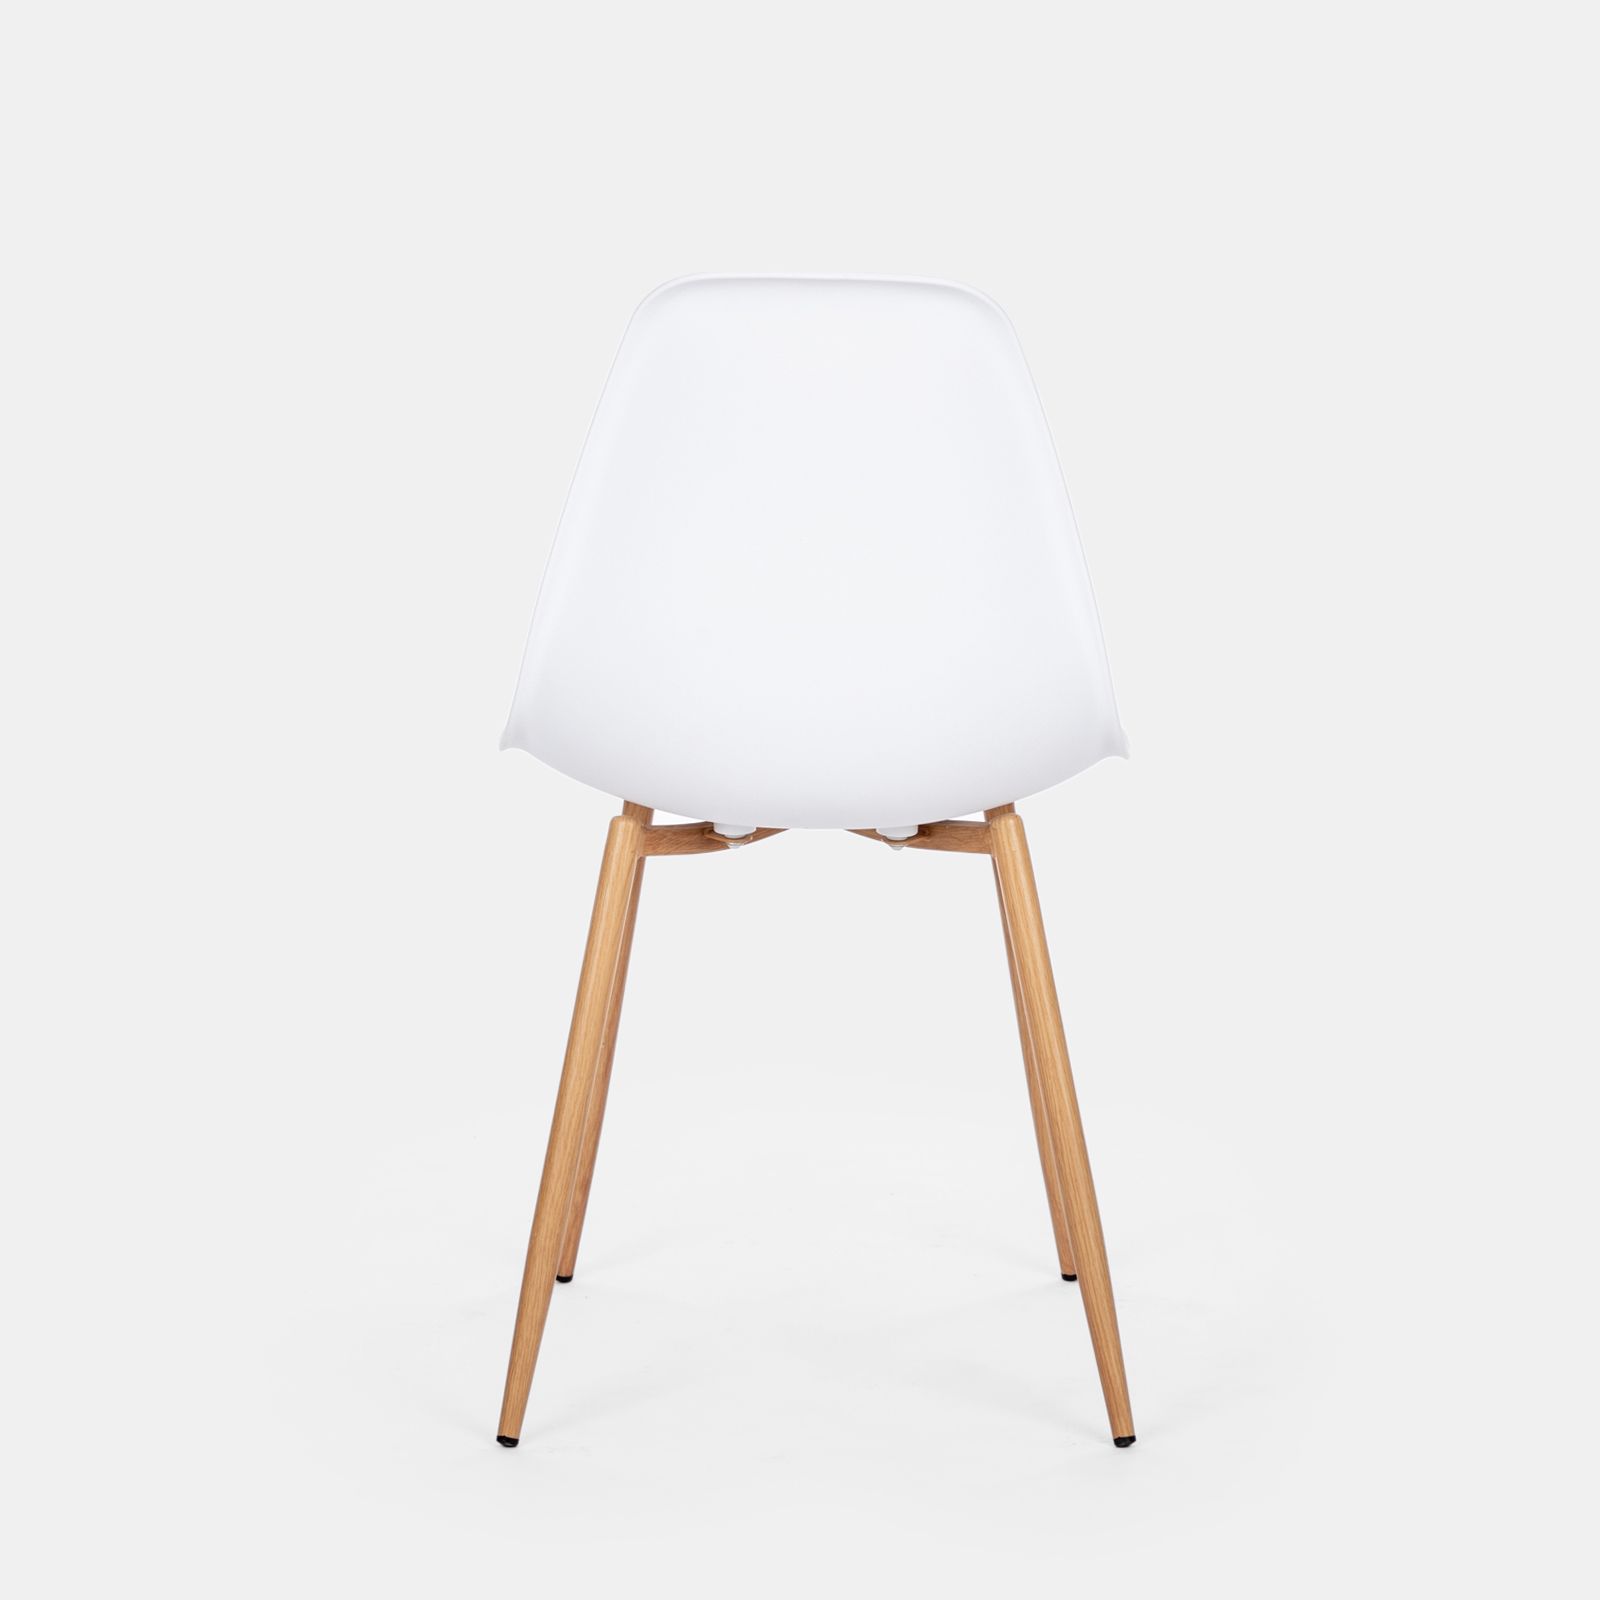 Set di 6 sedie bianche con gambe in legno - L 47 x P 52 x H 83 cm - OL –